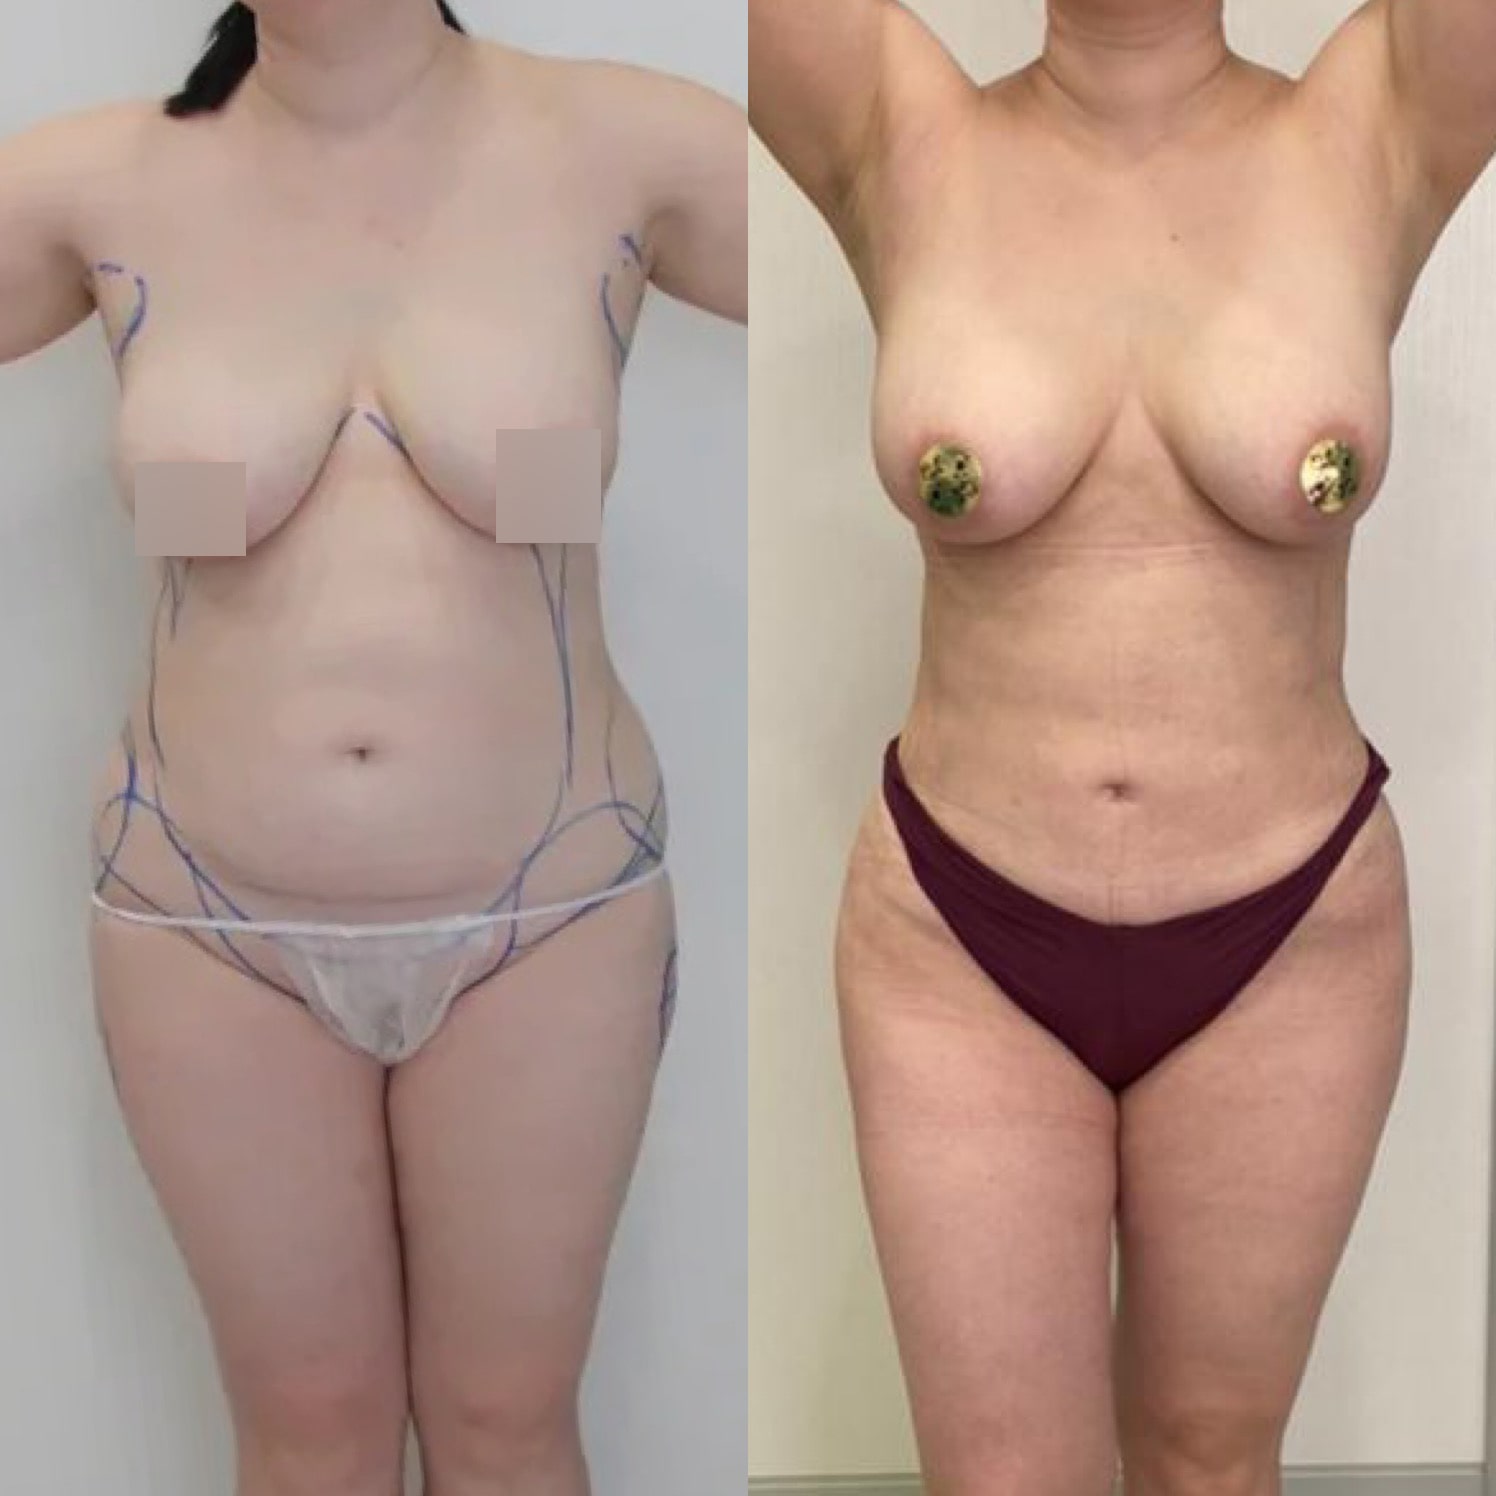 Липосакция спины - фото до и после